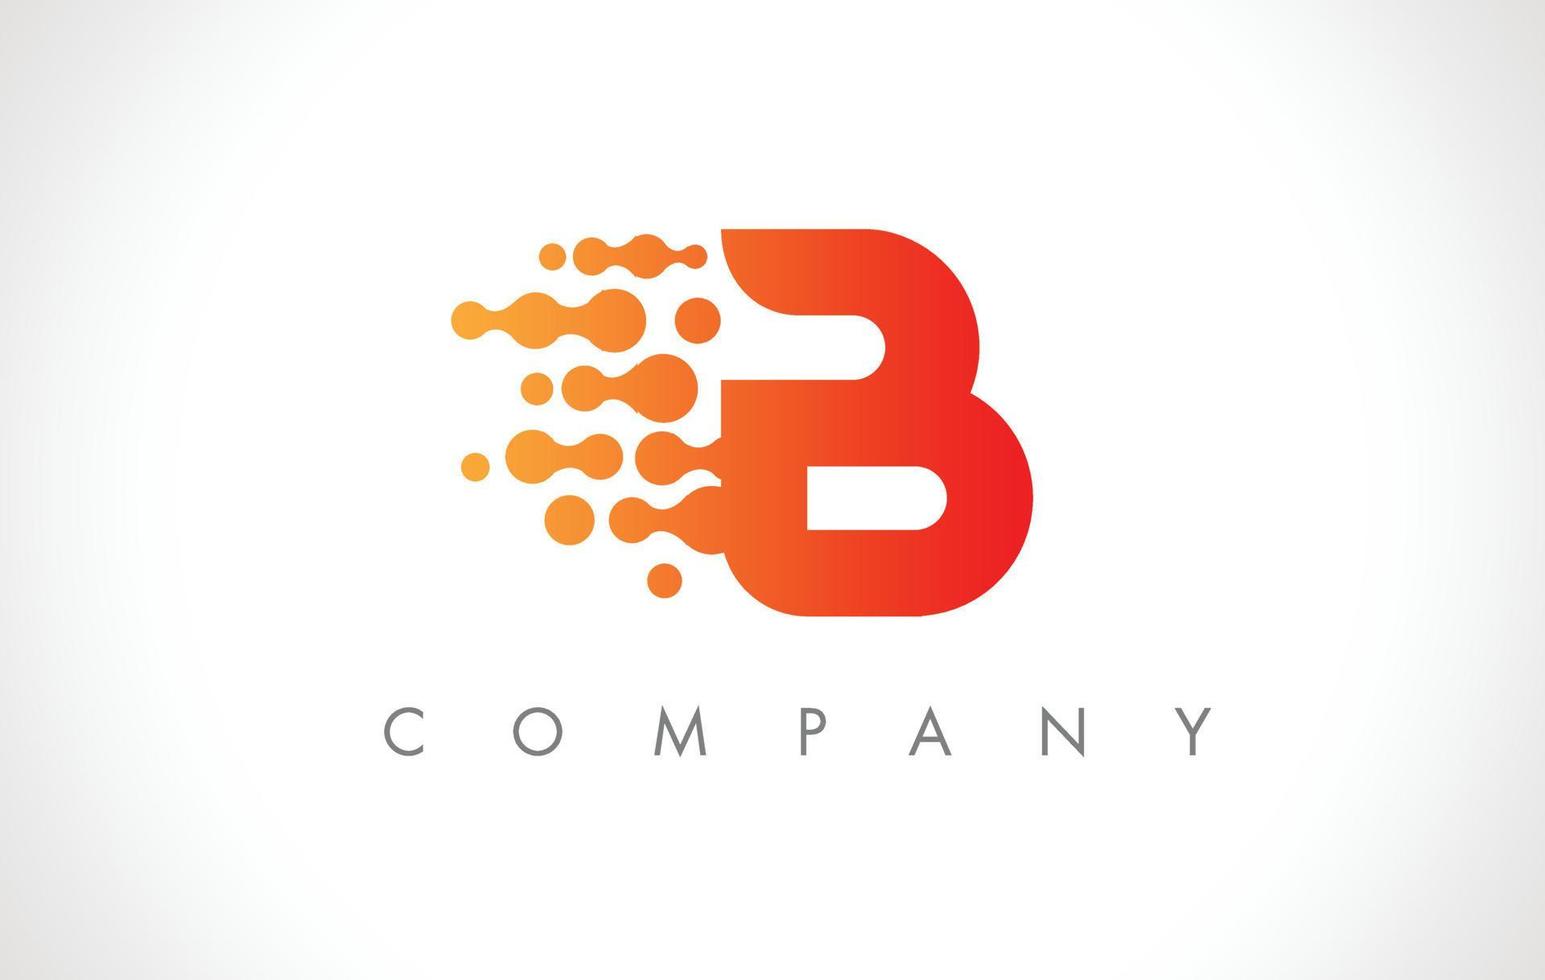 b logo. vecteur de conception d'icône de lettre b